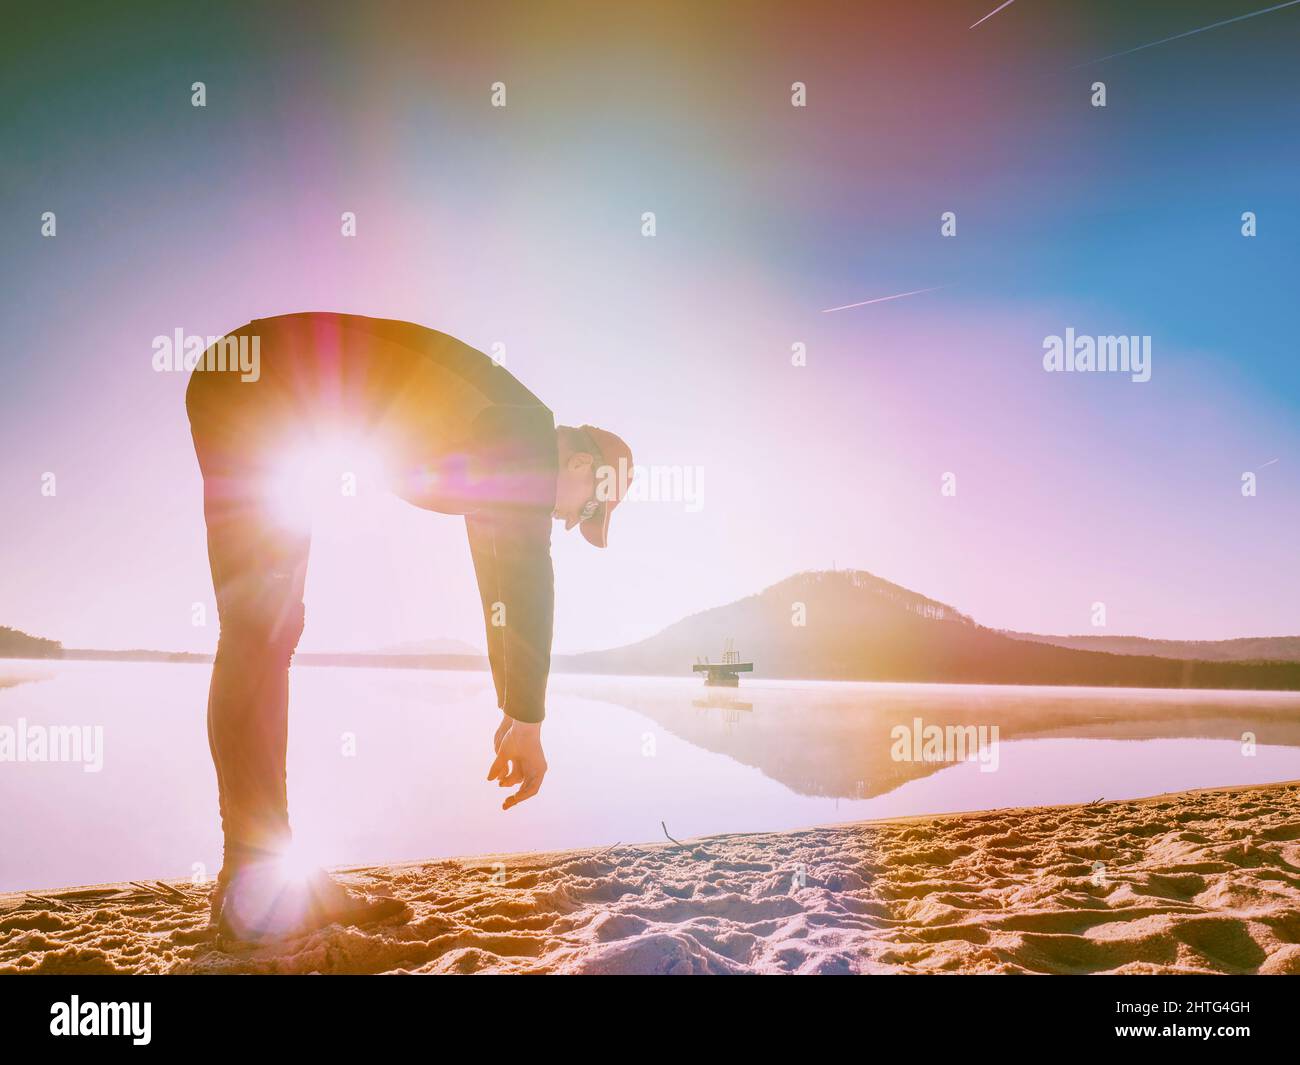 Hombre deportivo estirando se inclina hacia atrás en la playa. Corredor haciendo ejercicio en el lago. Iluminación abstracta, llamaradas coloridas. Foto de stock